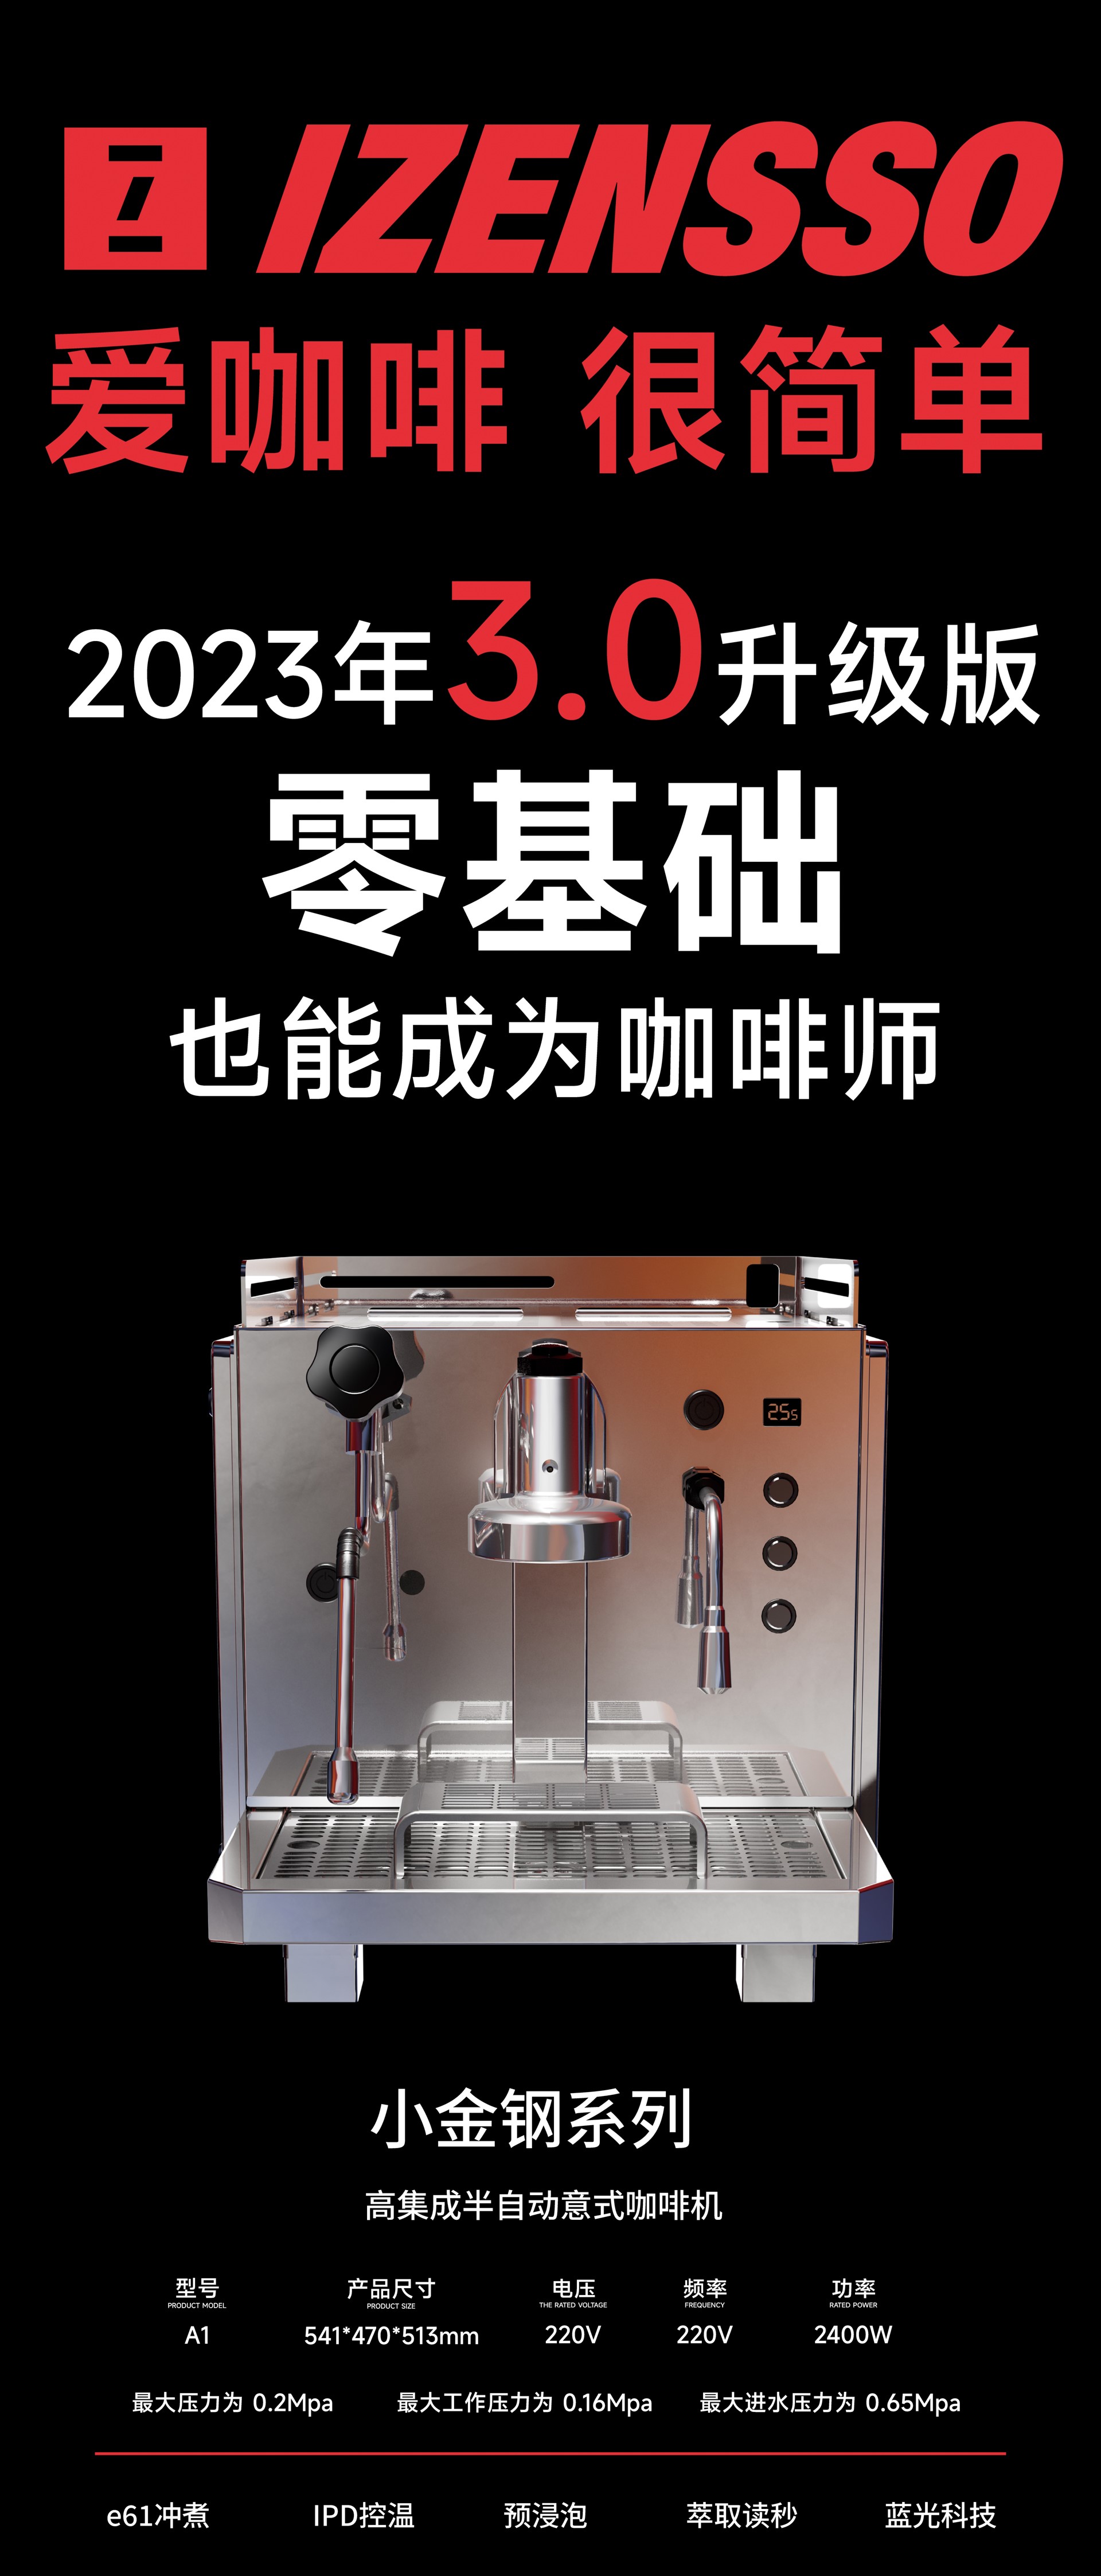 小金刚系列半自动咖啡机